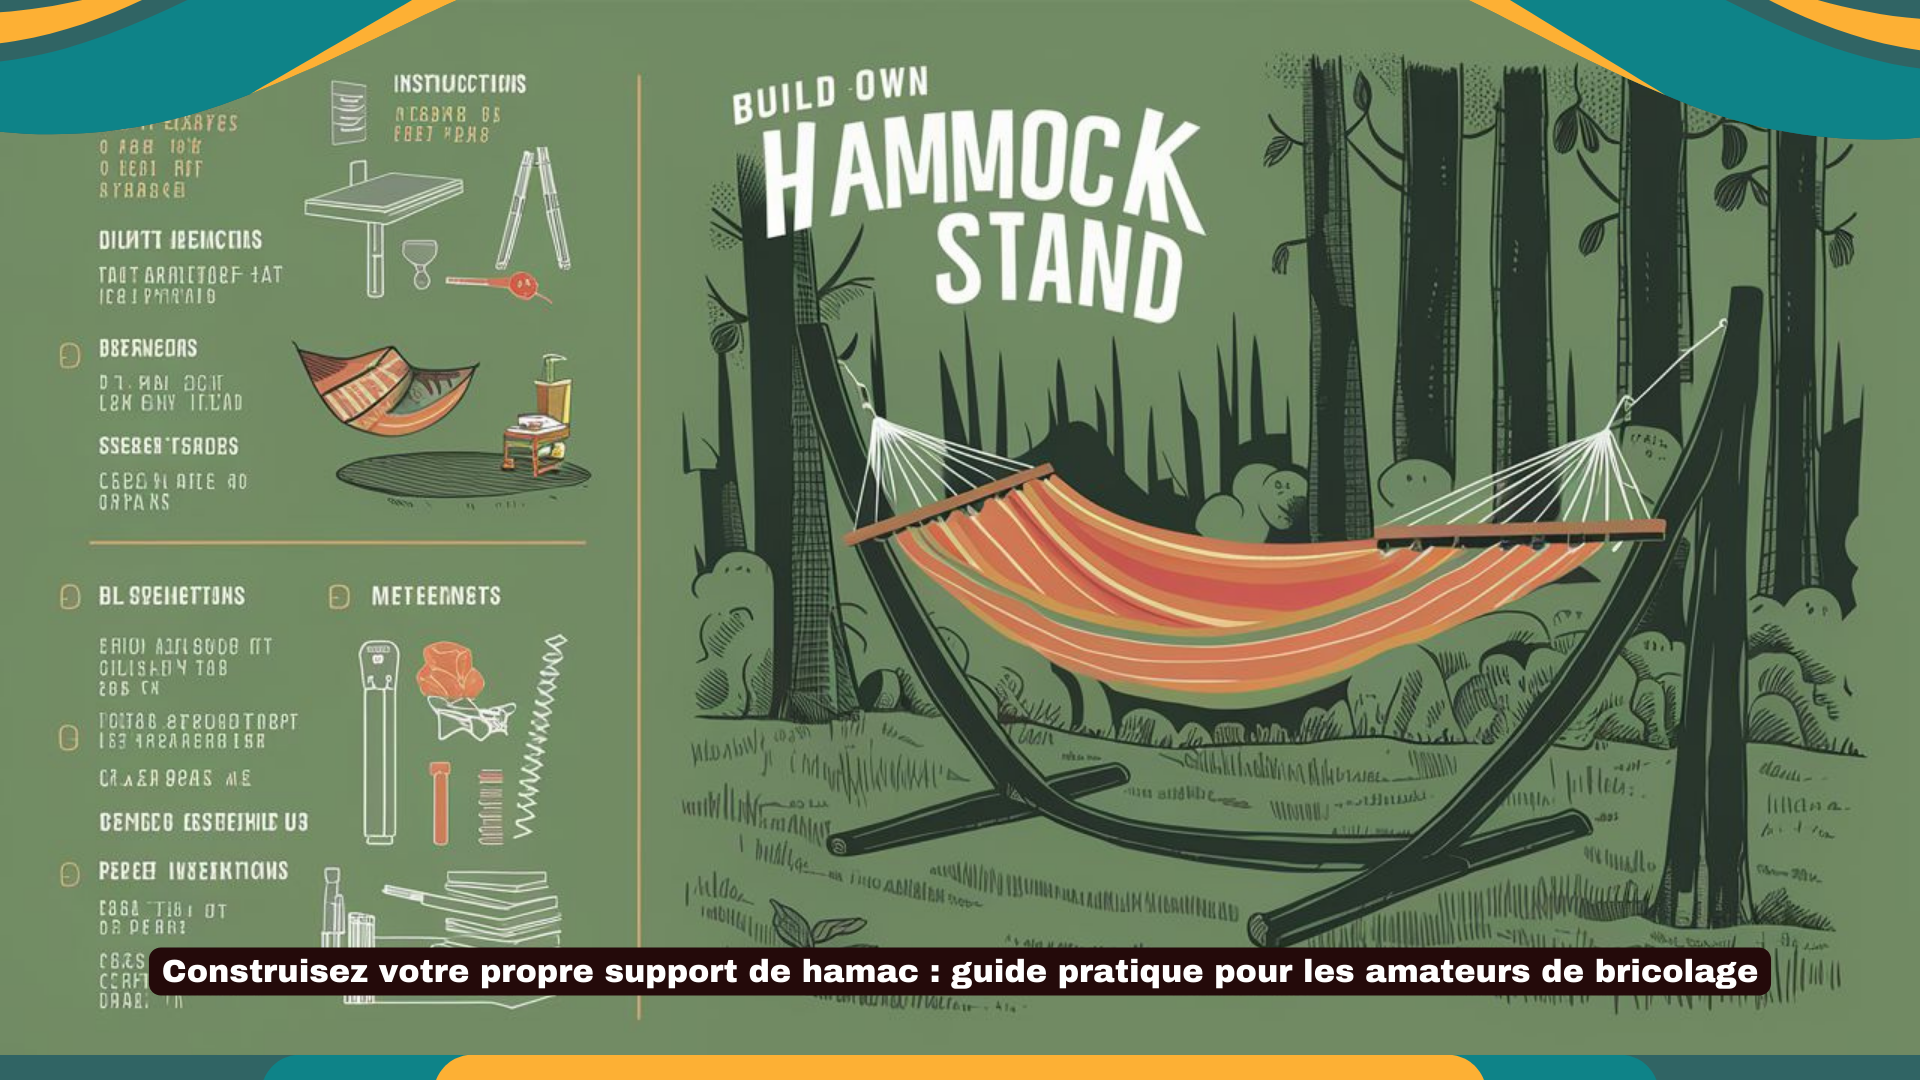 Construisez votre propre support de hamac guide pratique pour les amateurs de bricolage